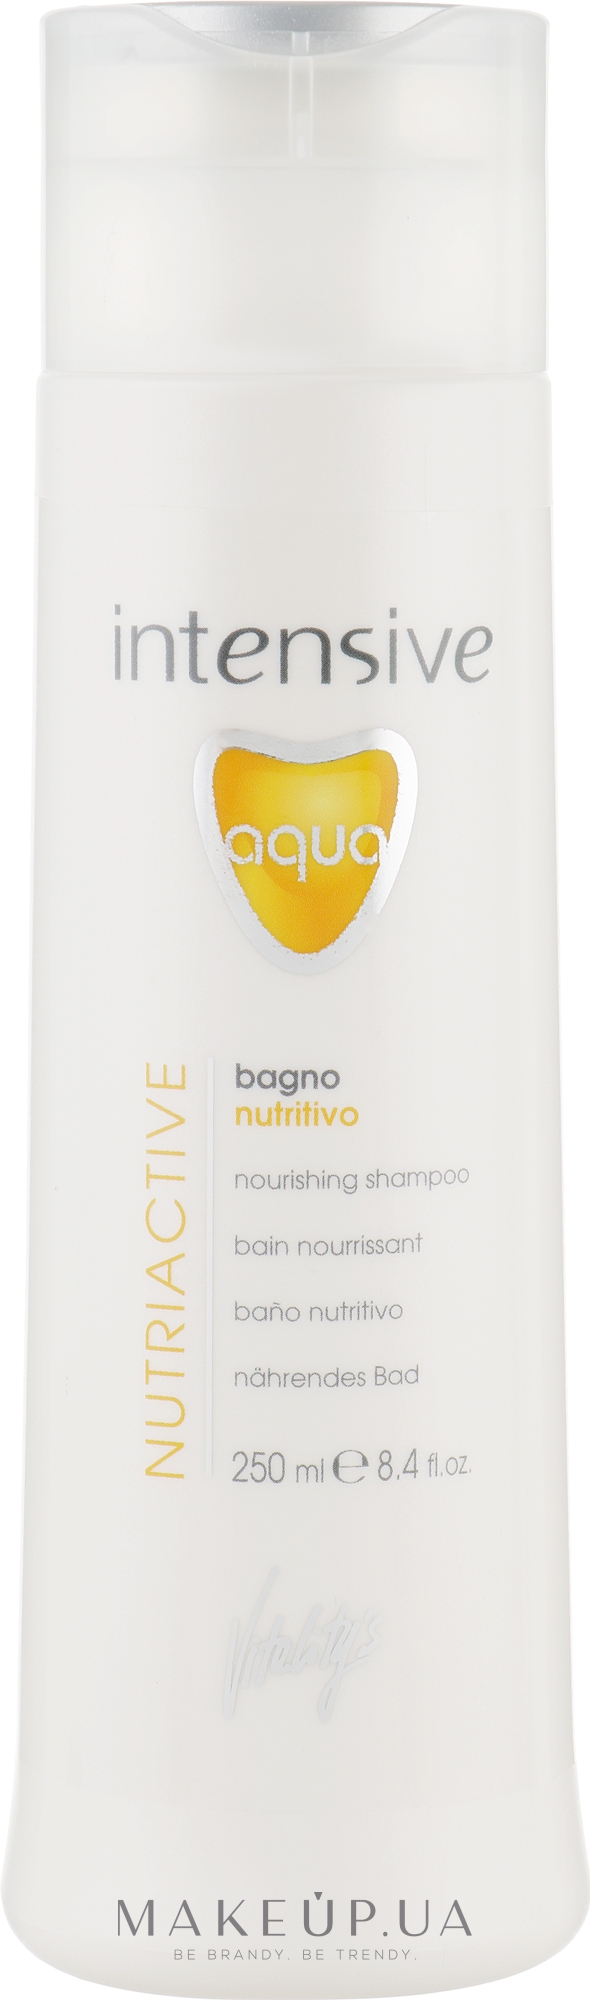 Питательный шампунь для сухих волос - Vitality's Intensive Aqua Nourishing Shampoo — фото 250ml